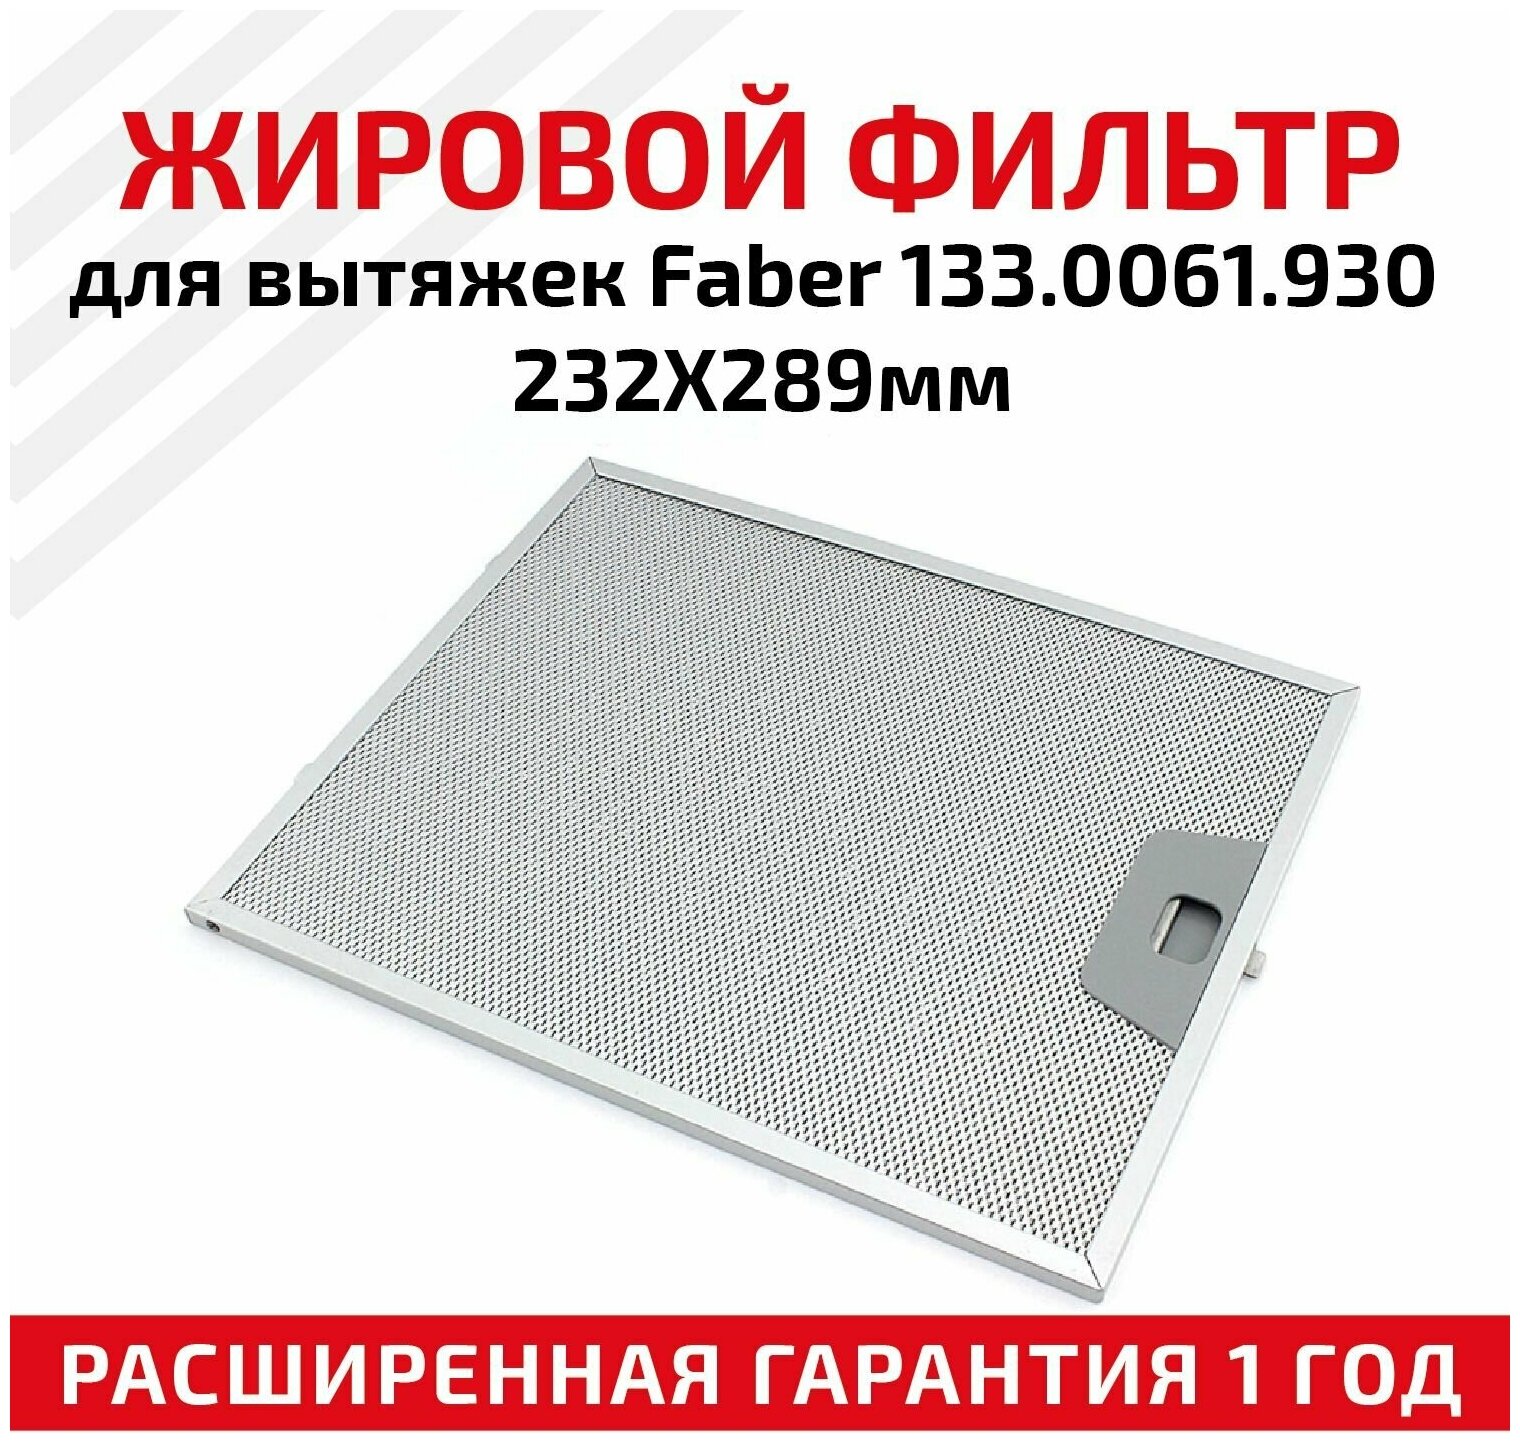 Жировой фильтр (кассета) алюминиевый (металлический) рамочный для вытяжек Faber 133.0061.930, многоразовый, 232х289мм - фотография № 1